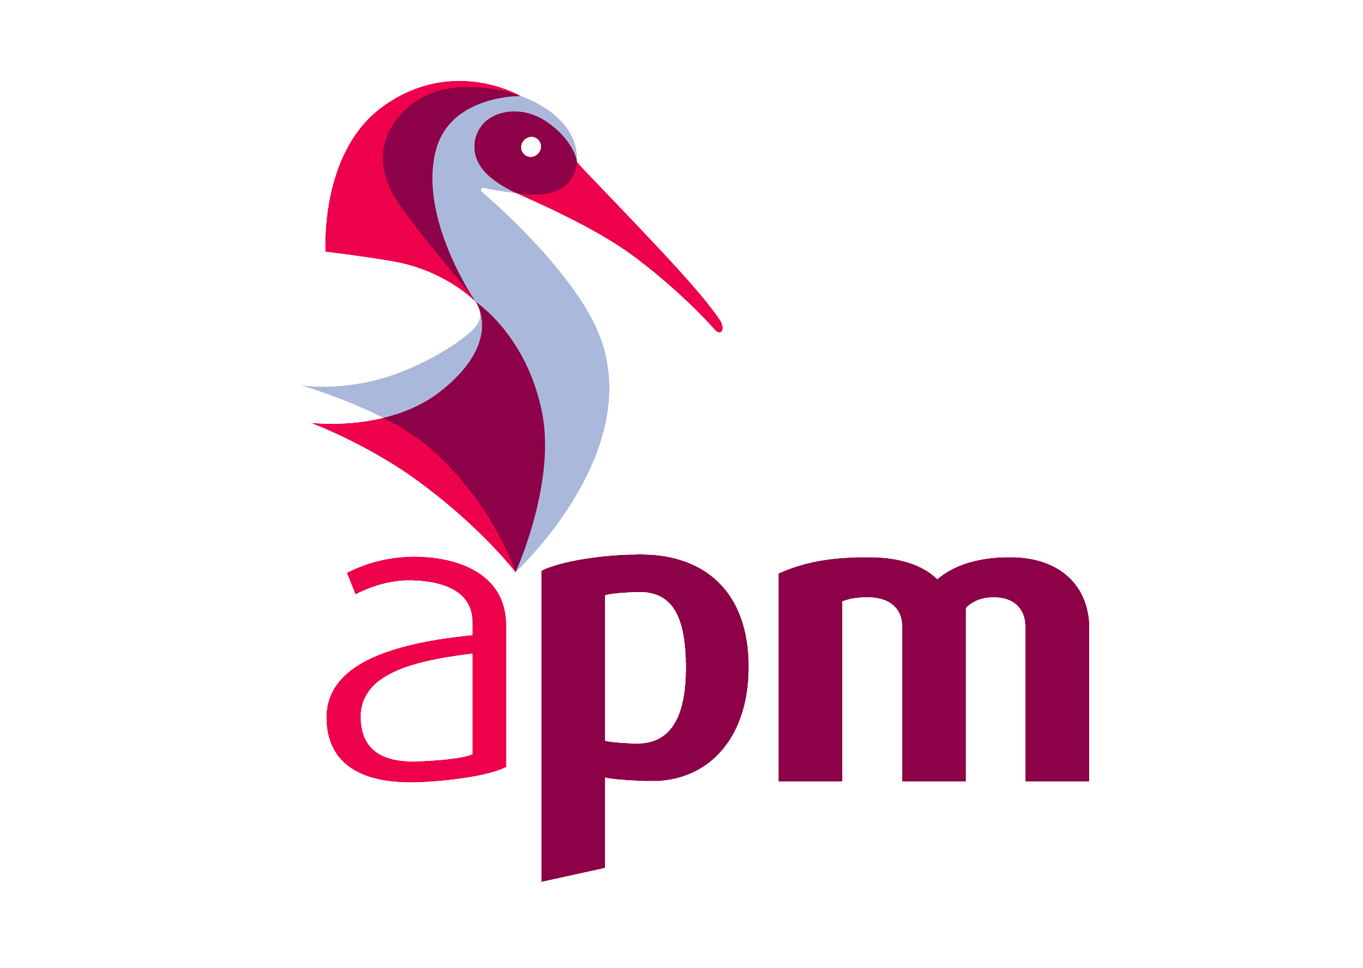 APM Project Fundamentals